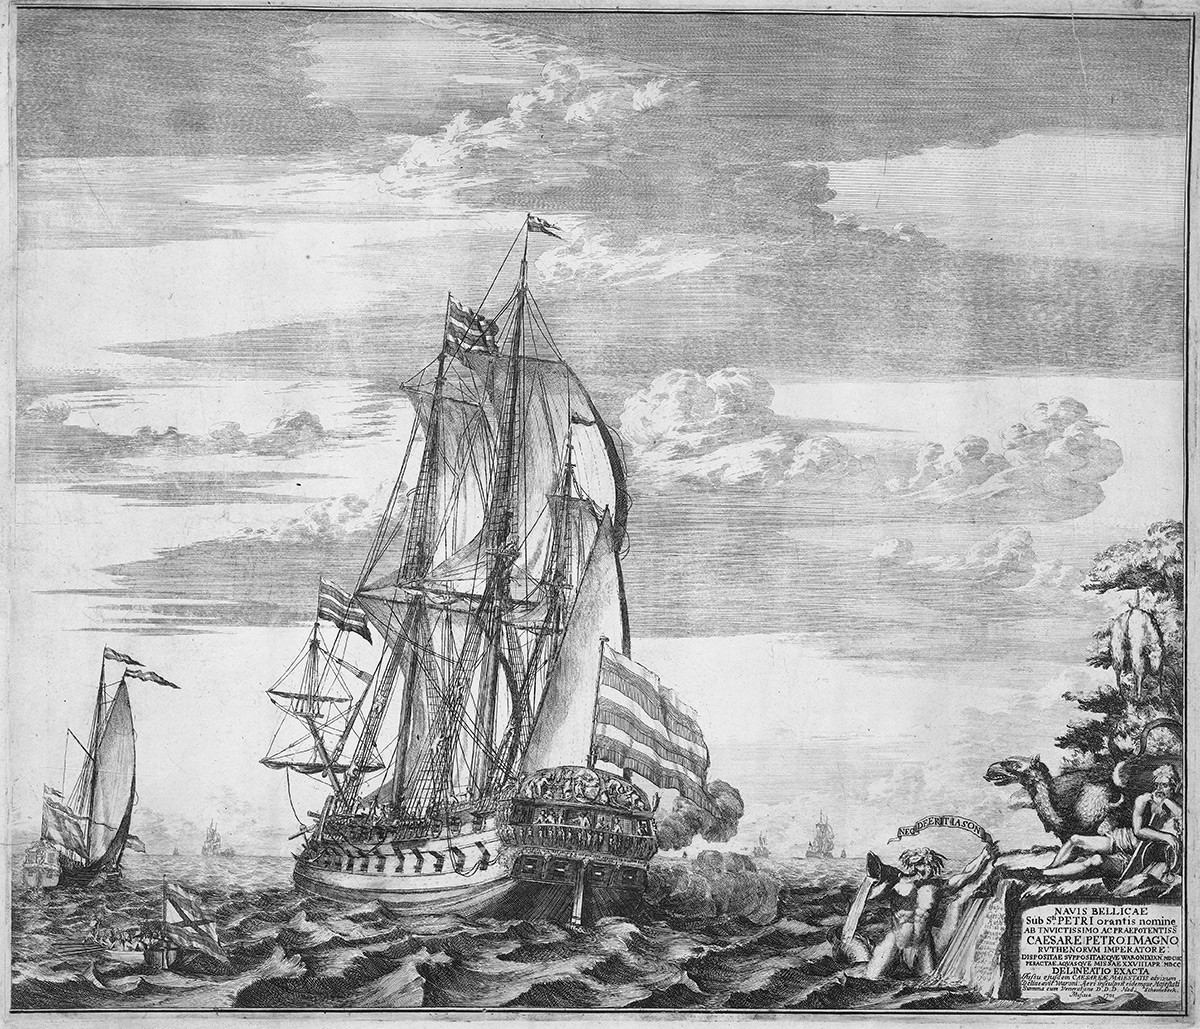 Navio almirante ‘Goto Predestinatsia’ (Providência de Deus), construído pelo tsar Pedro, o Grande, em Voronej, 1700, 1701. Encontrado na coleção do Rijksmuseum, Amsterdã. Artista: Schoonebeek (Schoonebeck), Adriaan (1661-1705)